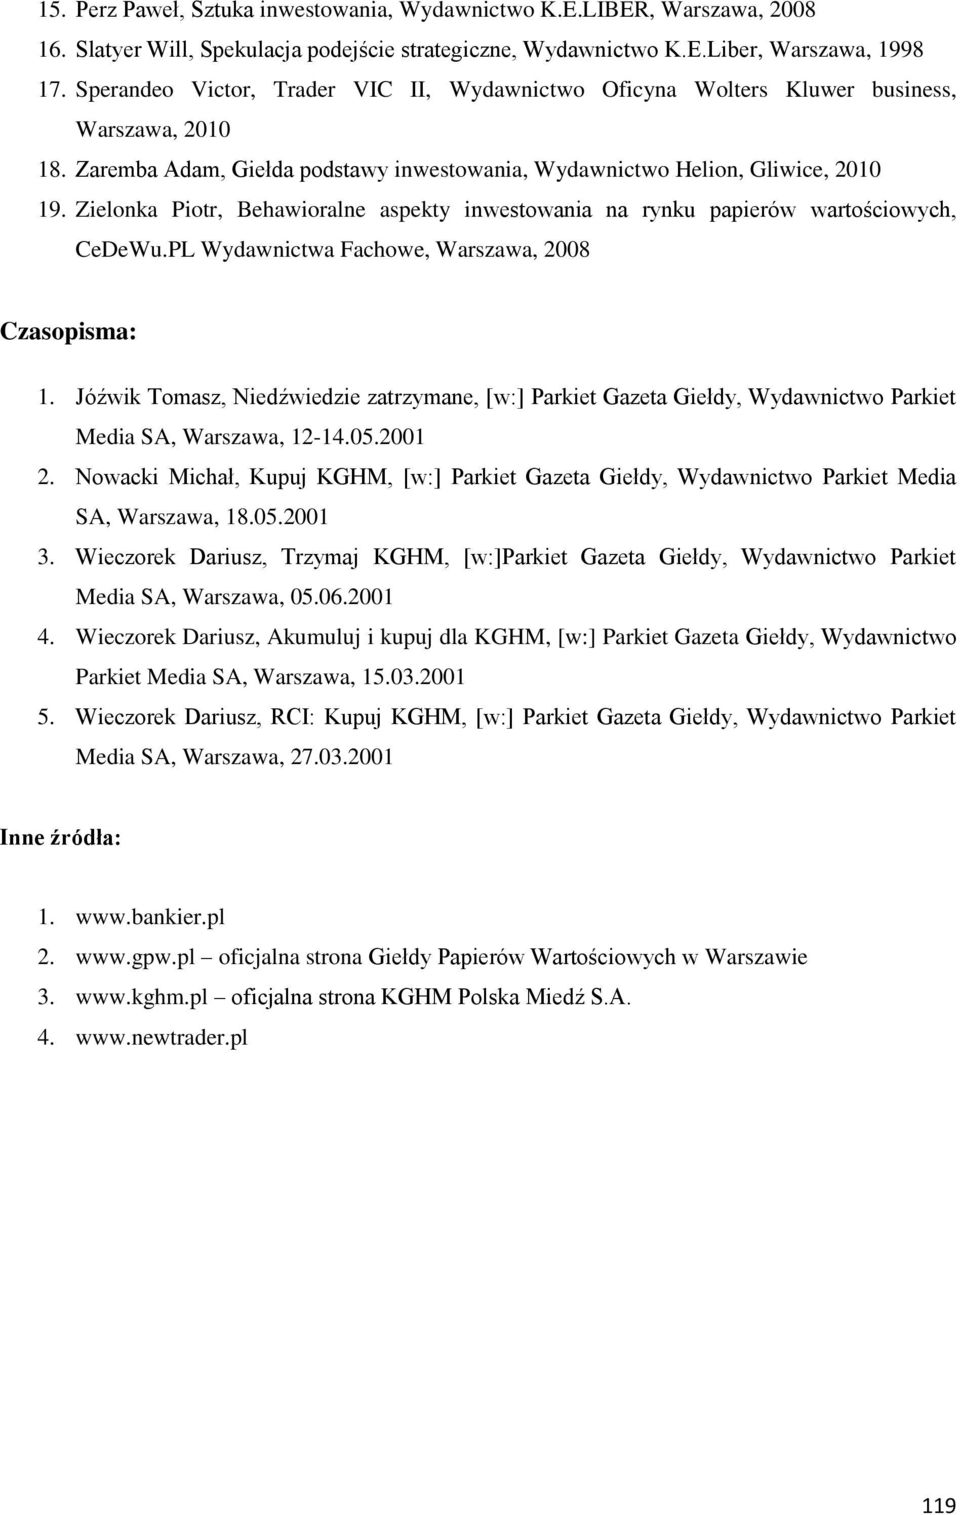 Zielonka Piotr, Behawioralne aspekty inwestowania na rynku papierów wartościowych, CeDeWu.PL Wydawnictwa Fachowe, Warszawa, 2008 Czasopisma: 1.